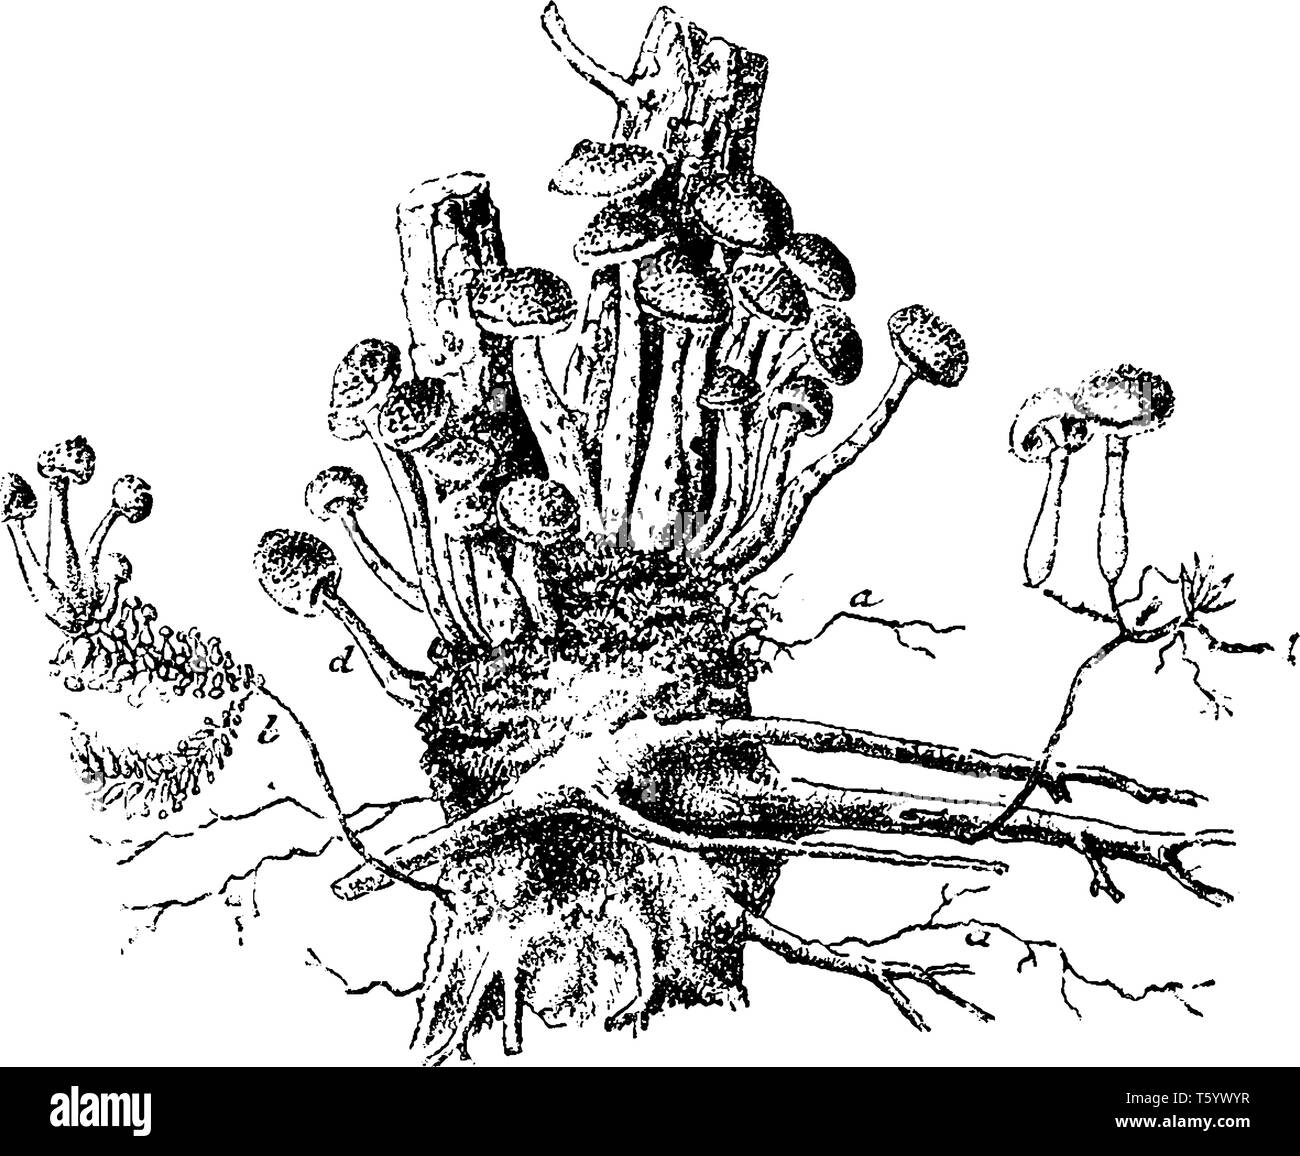 C'est arbre de pin. Et les racines de champignons de cette plante sont de plus en plus par le groupe dans l'arbre, vintage dessin ou gravure illustration. Illustration de Vecteur